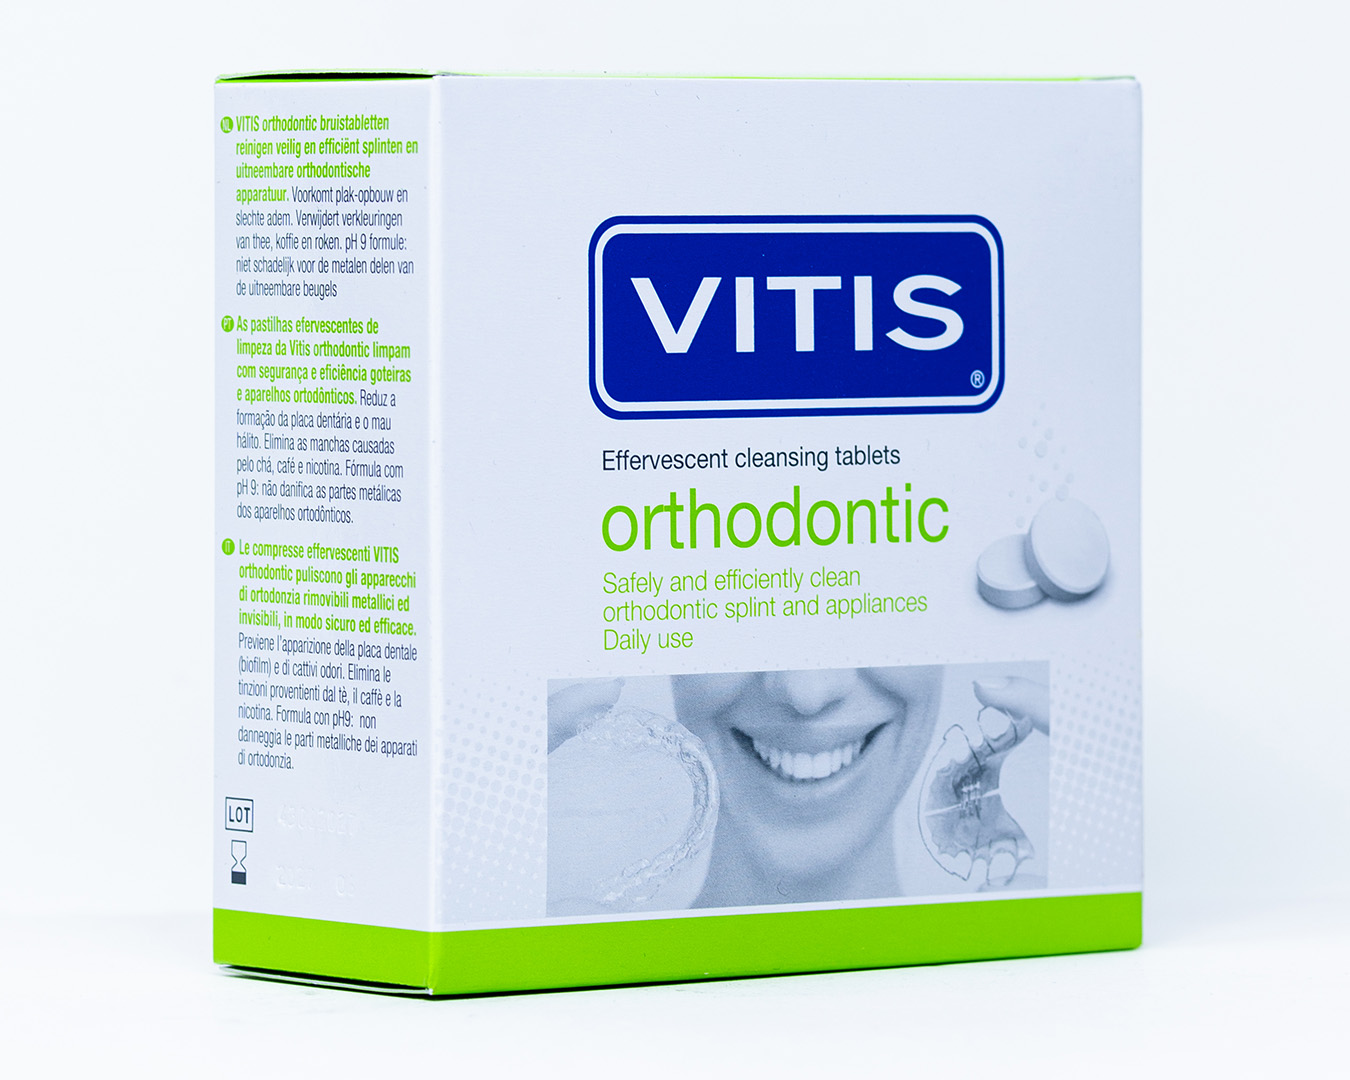 Dentaid Vitis Compresse Orthodontic per Dispositivi Mobili - 32 pz